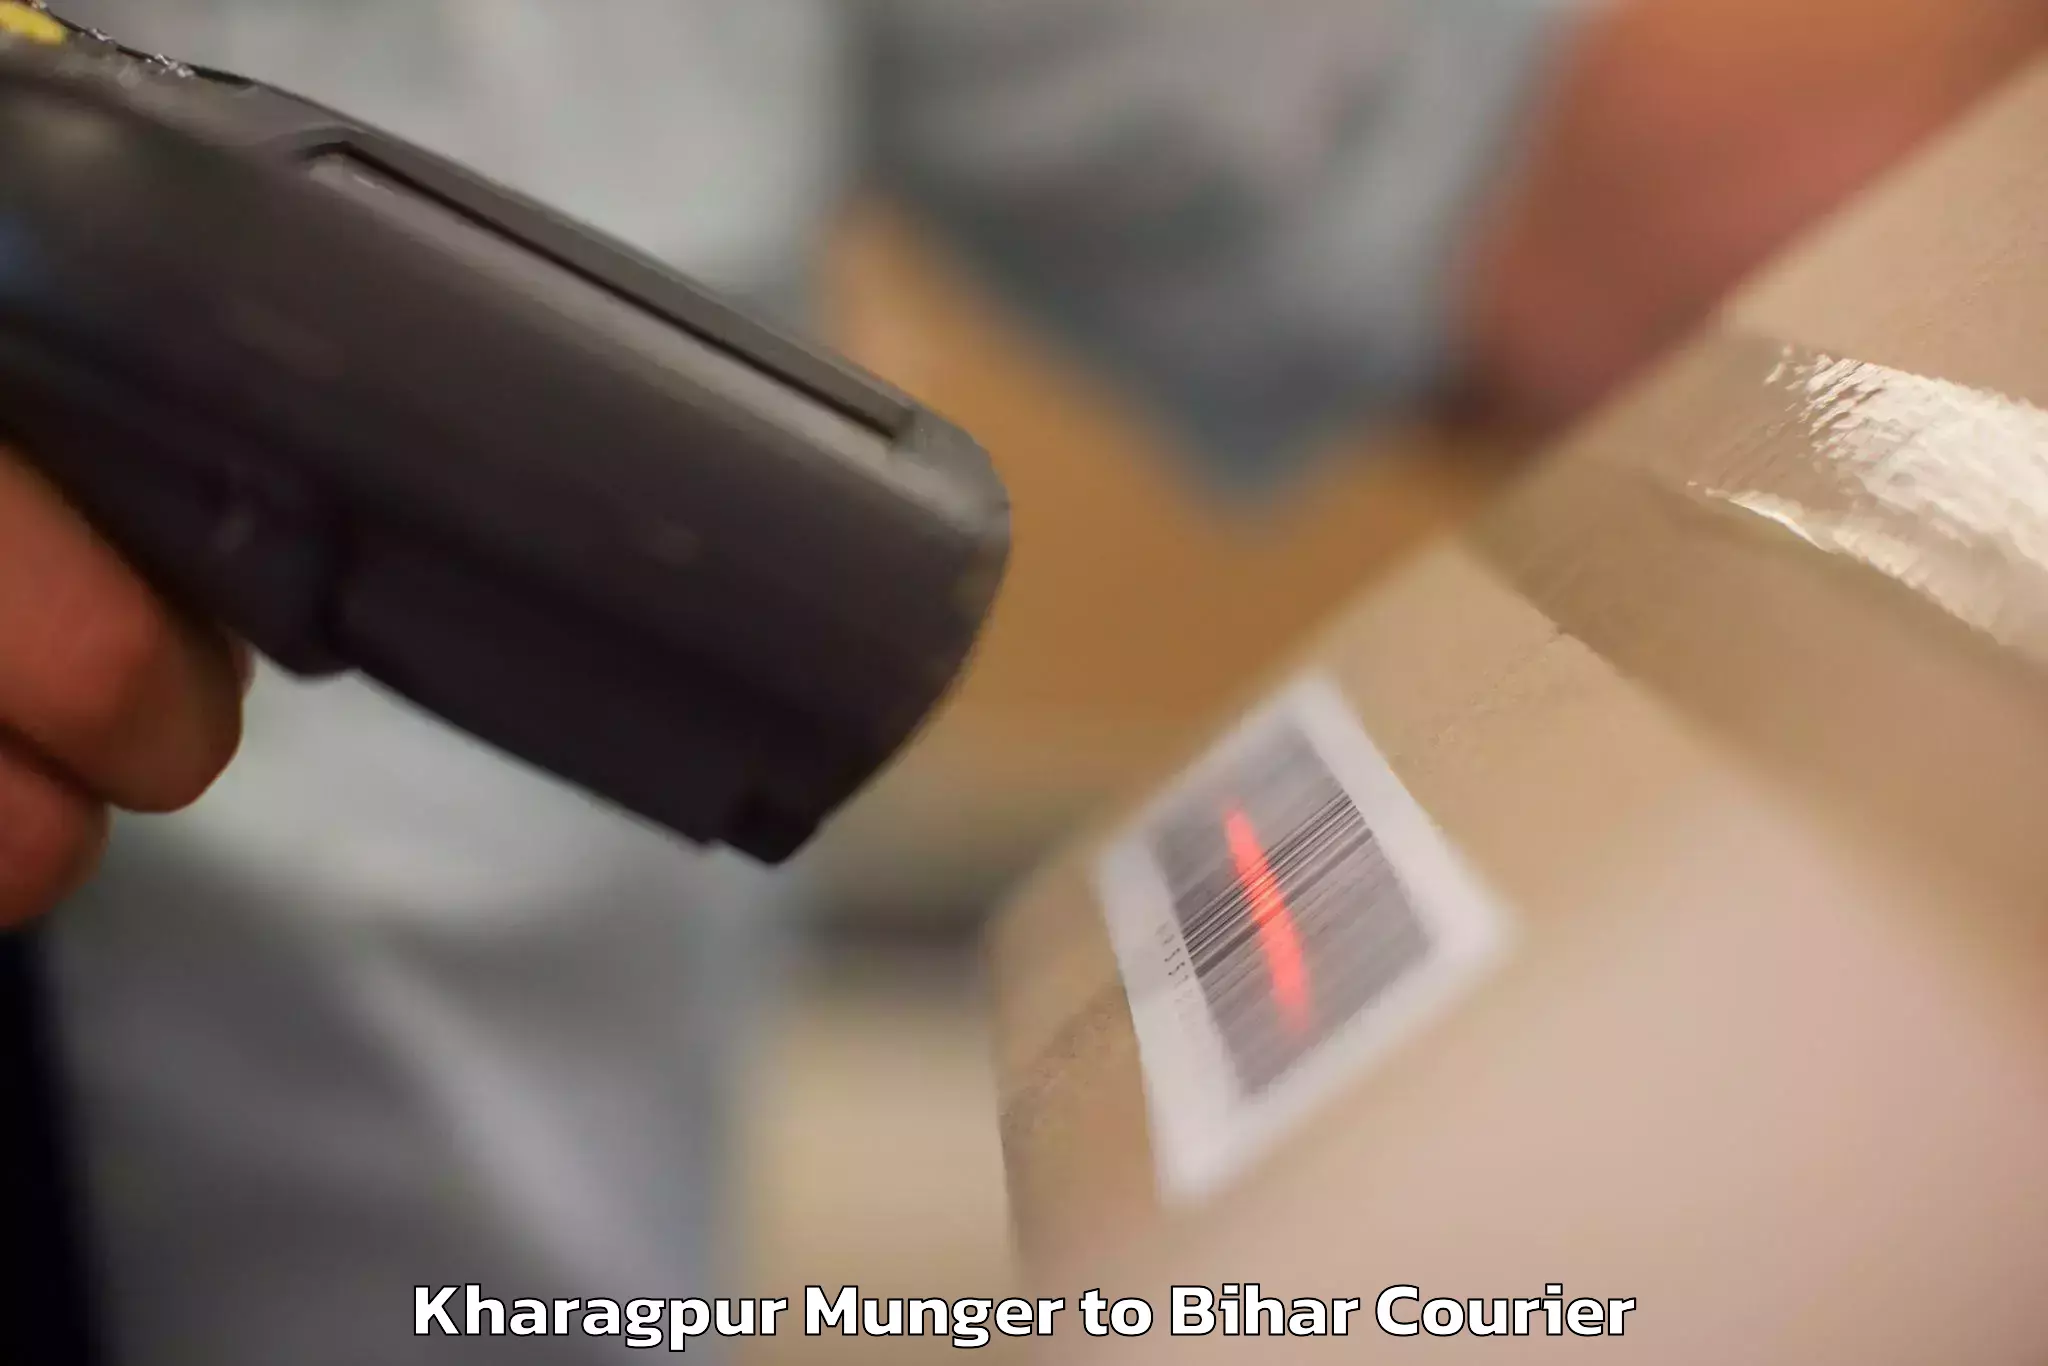 Luggage transport company Kharagpur Munger to Sudhani